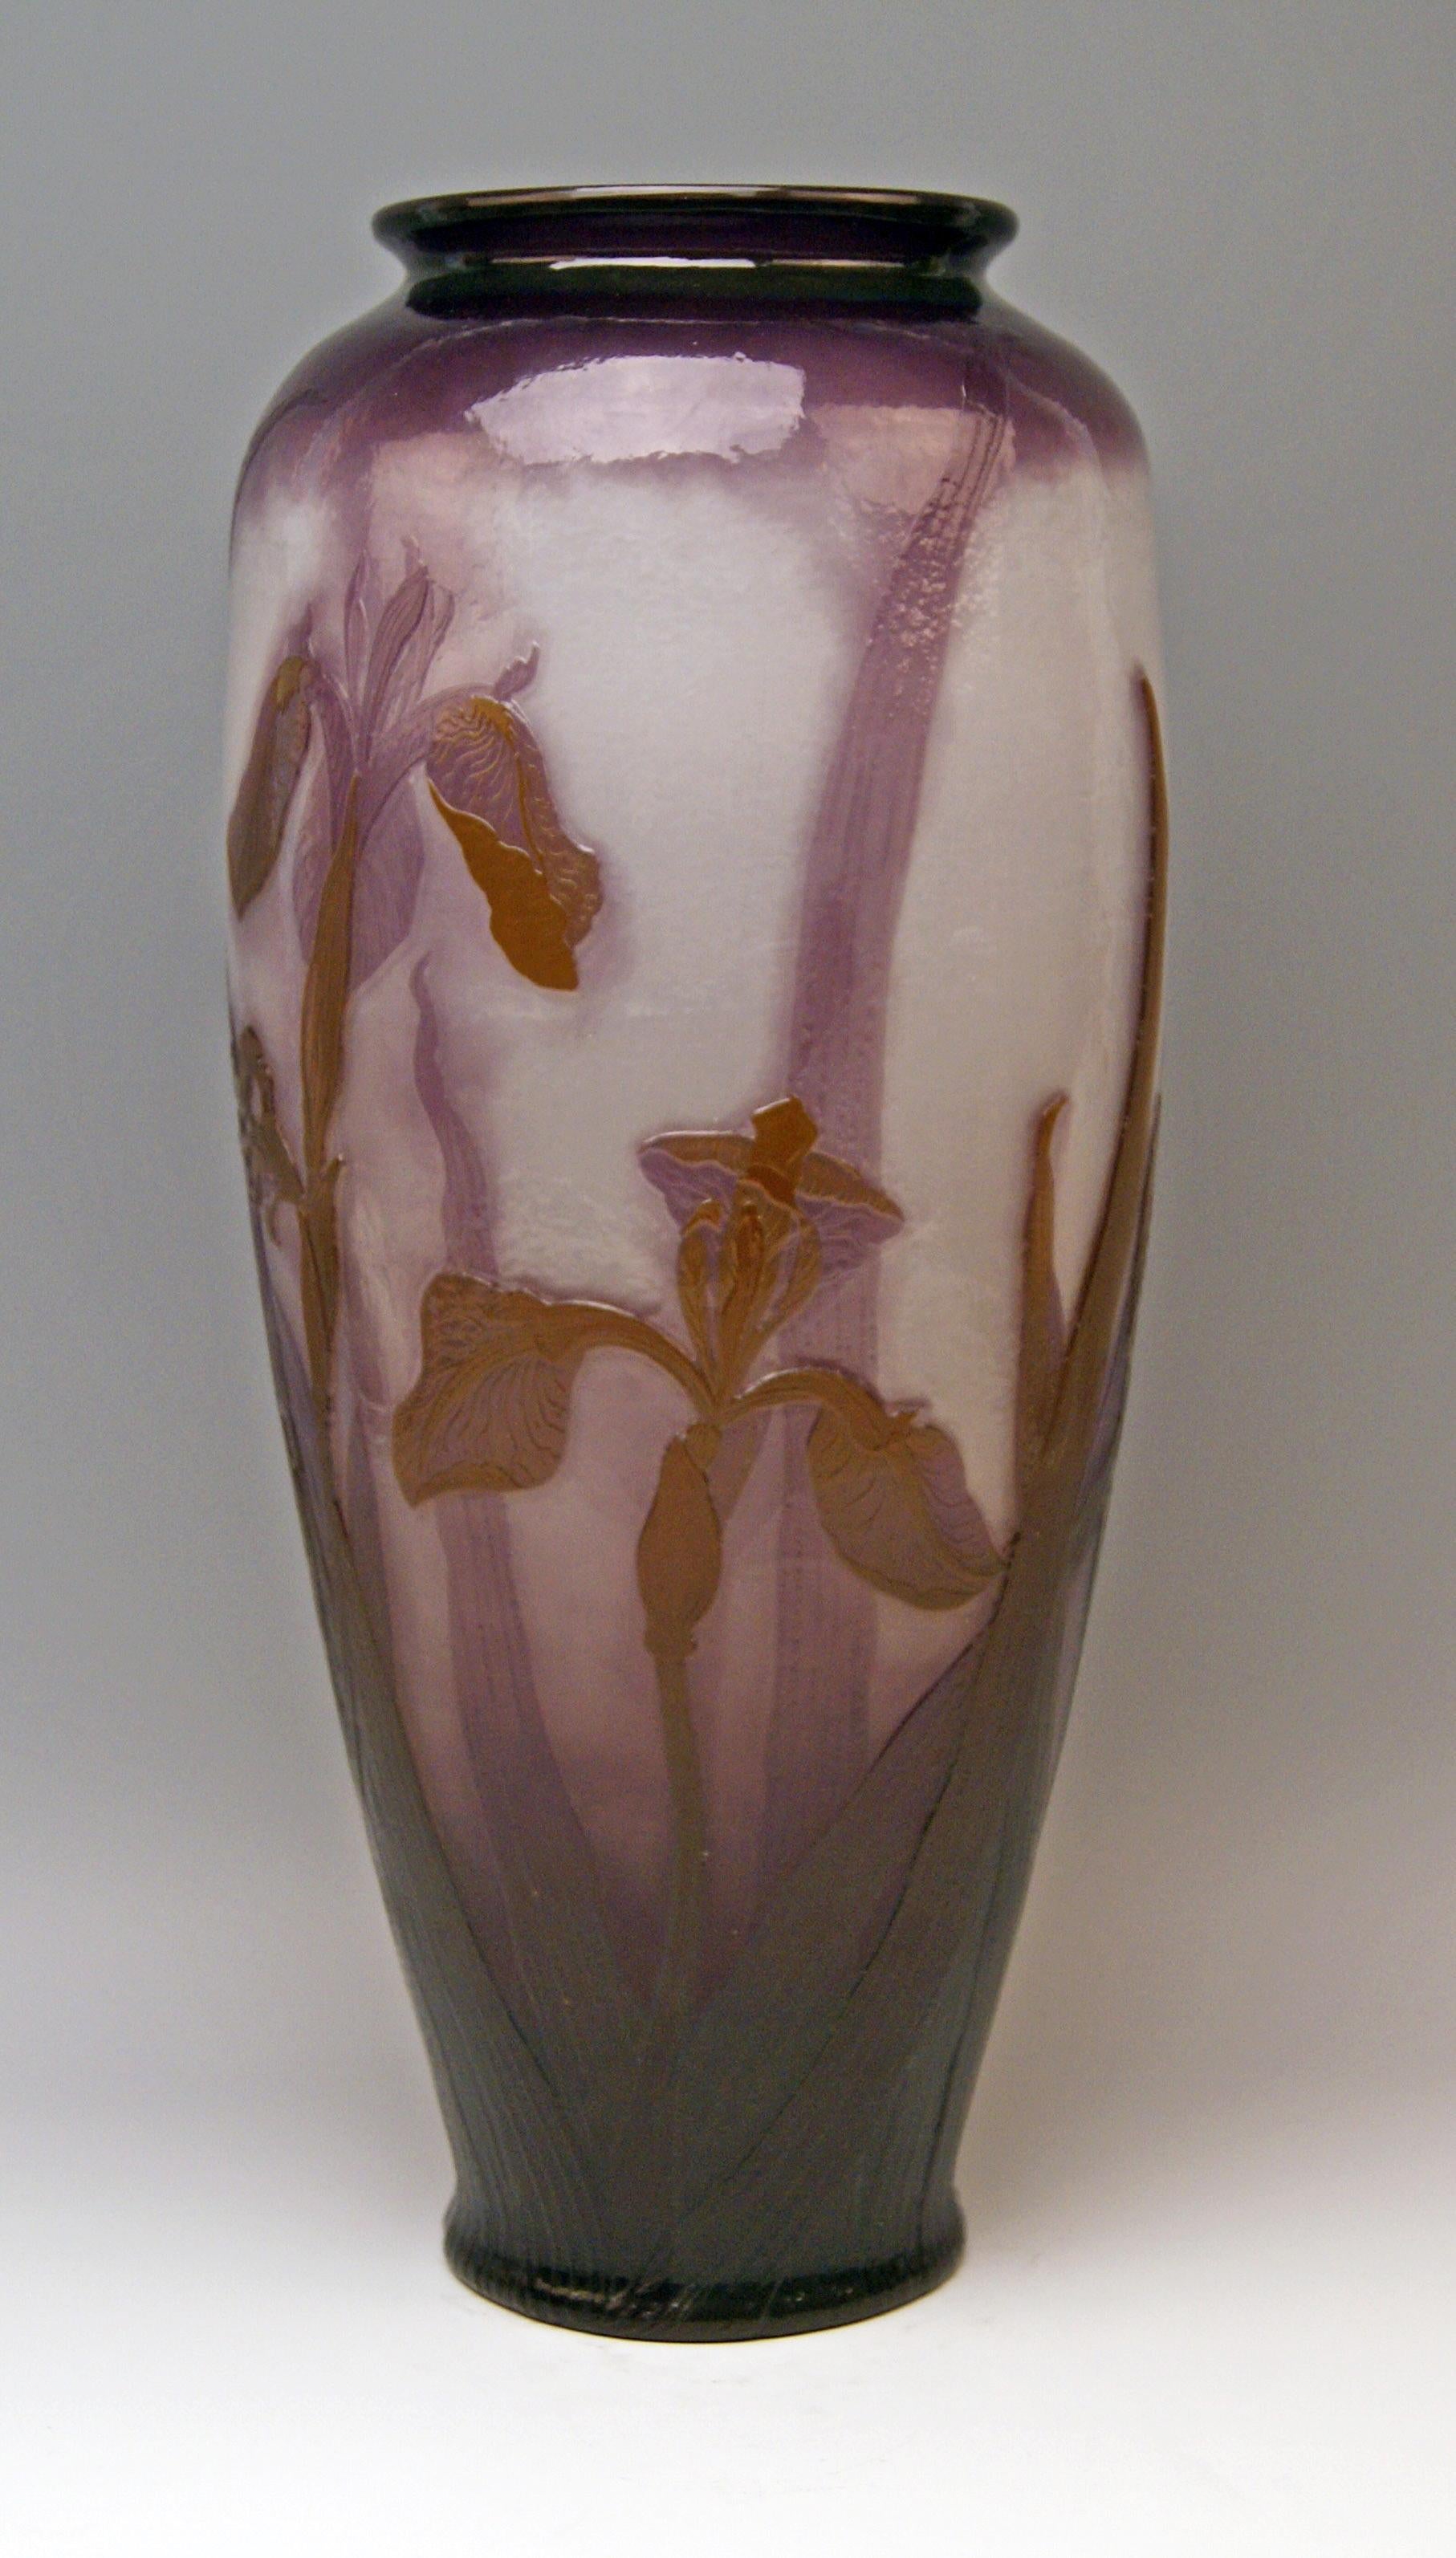 lenox iris vase